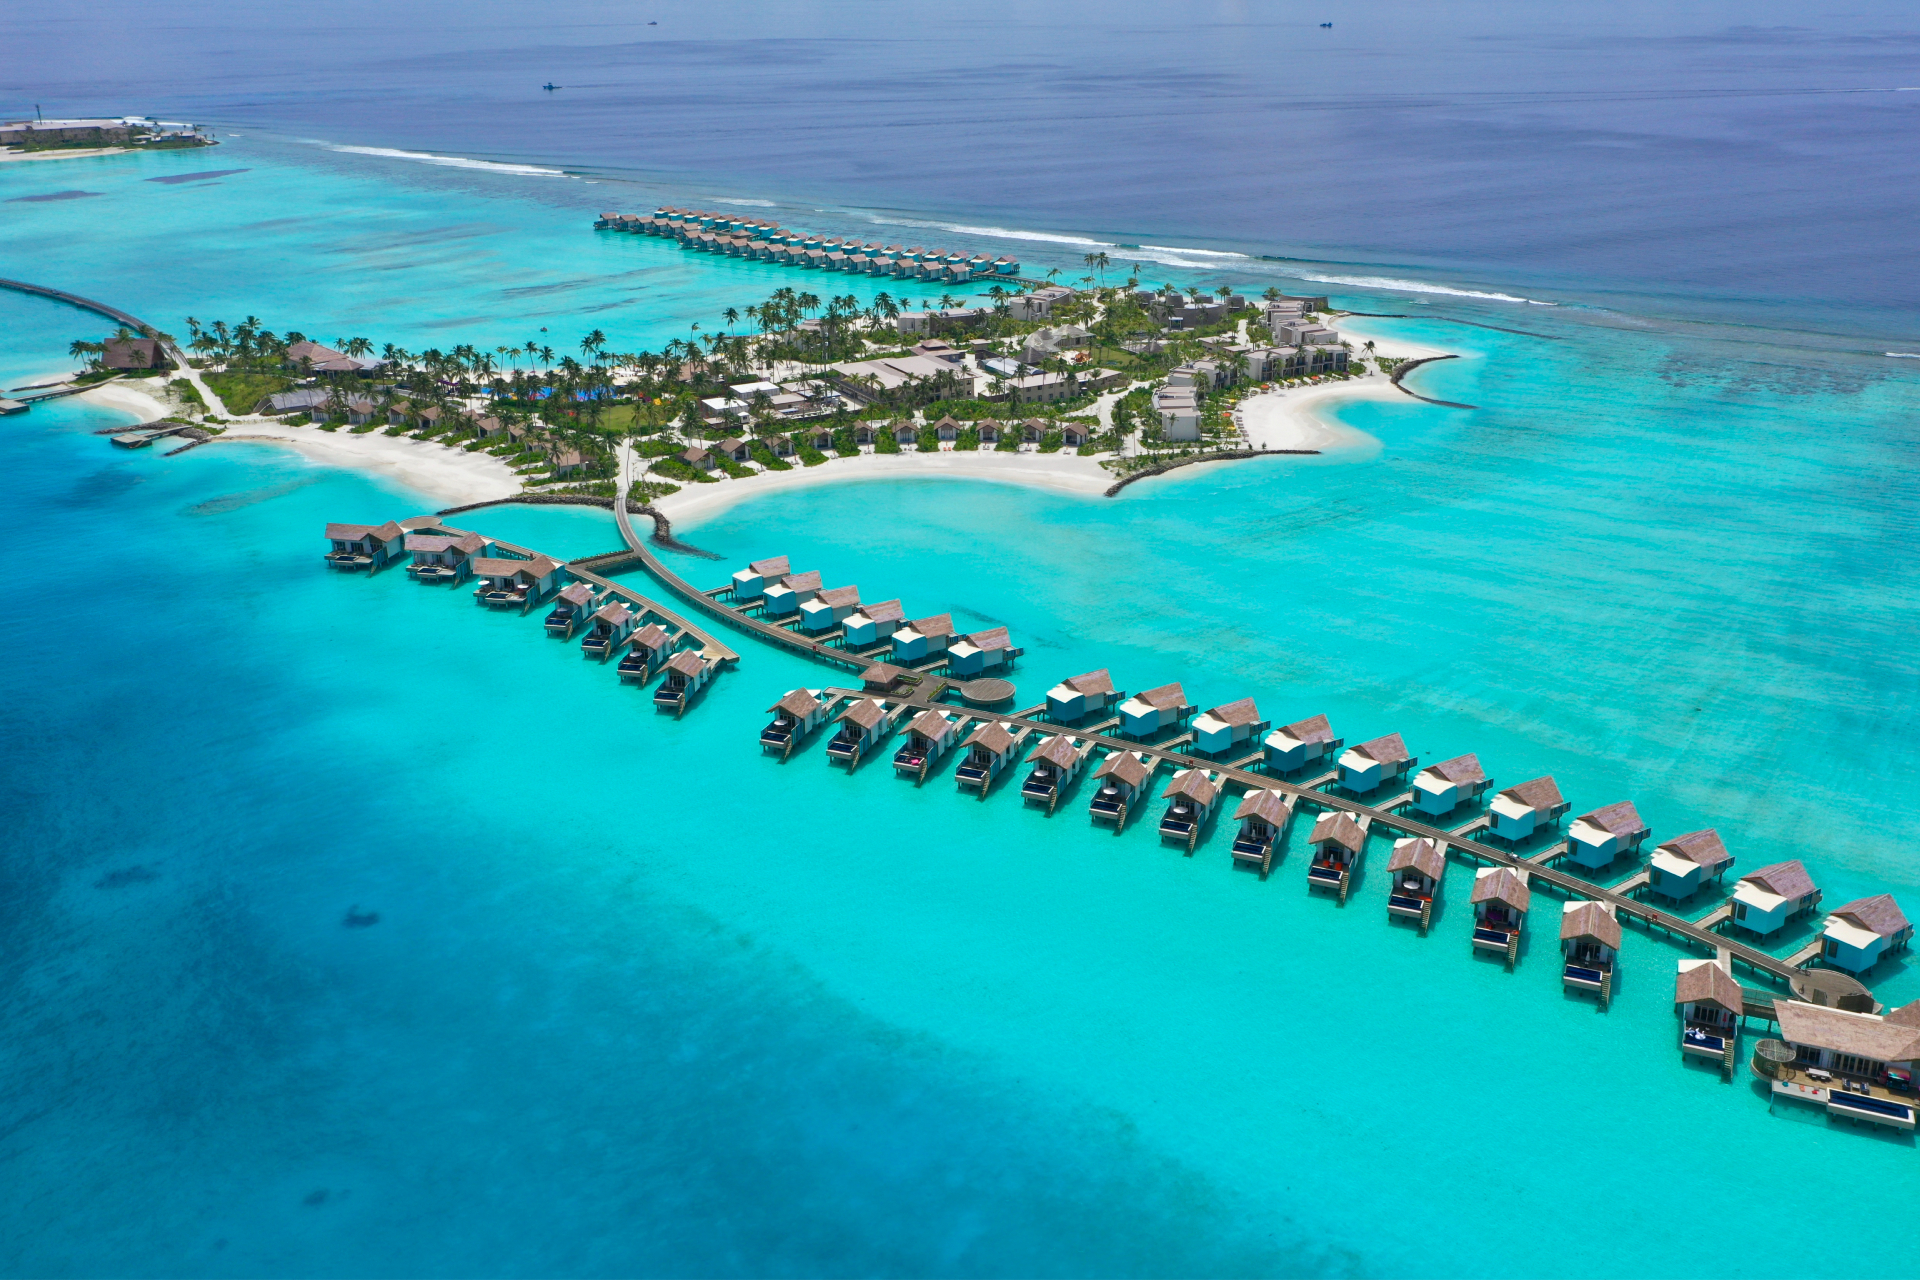 Территория Crossroads, включающая отели Hard Rock Hotel Maldives и SAii Lagoon Hotel Maldives, а также марину, в которой расположены рестораны, магазины и пристань для яхт